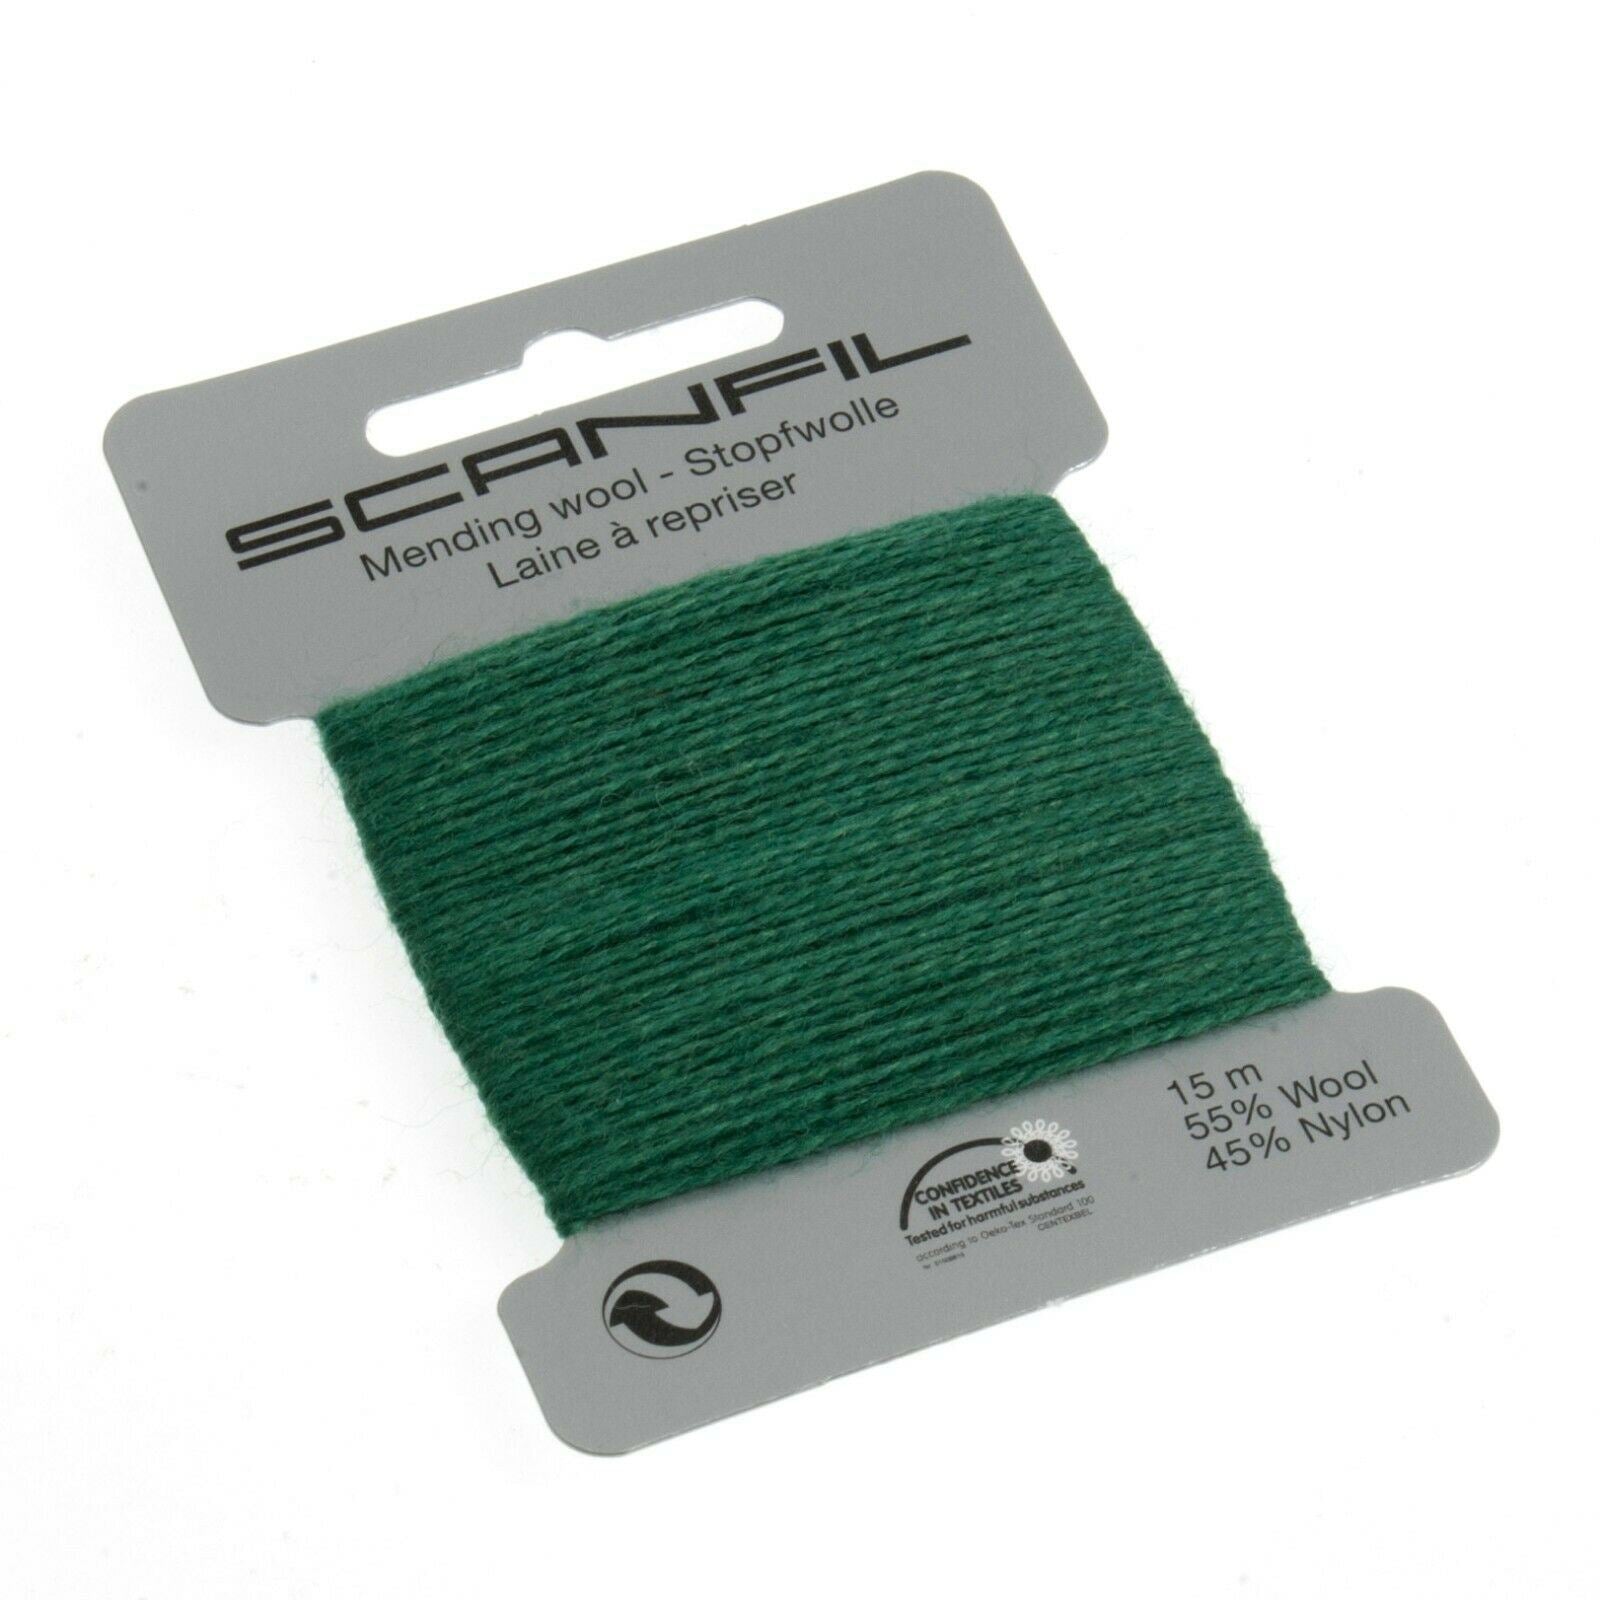 Scanfil Wool 15M Mending Repair Darning Thread